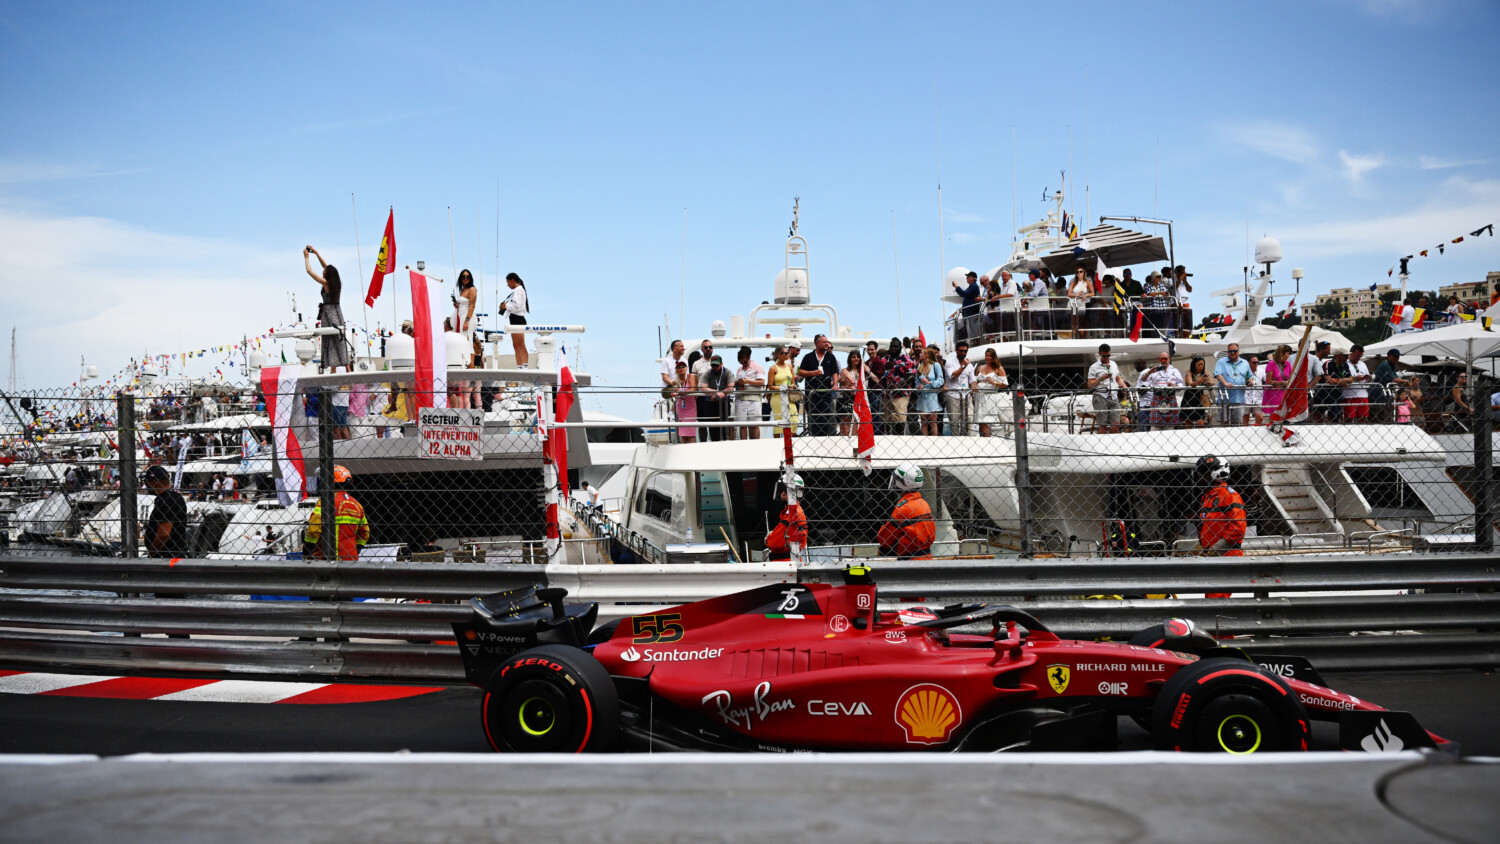 All Bots, No Brakes: ChatGPT & Bard AI Predict the 2023 F1 Monaco Grand Prix